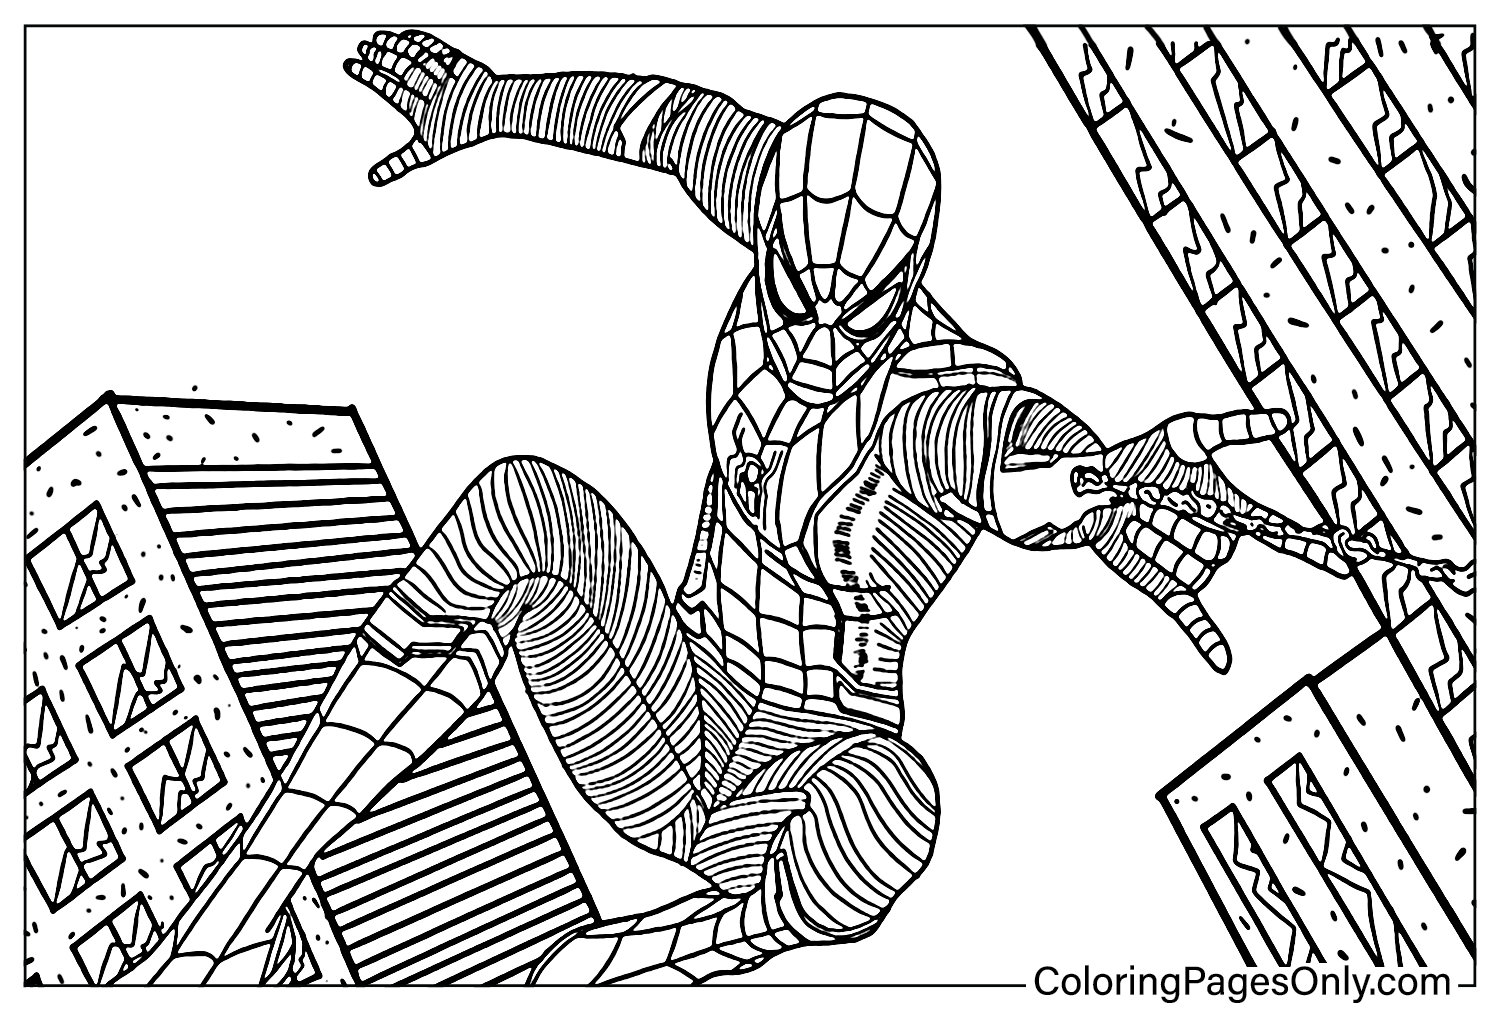 Spider-Man lejos de casa Página para colorear de Spider-Man lejos de casa